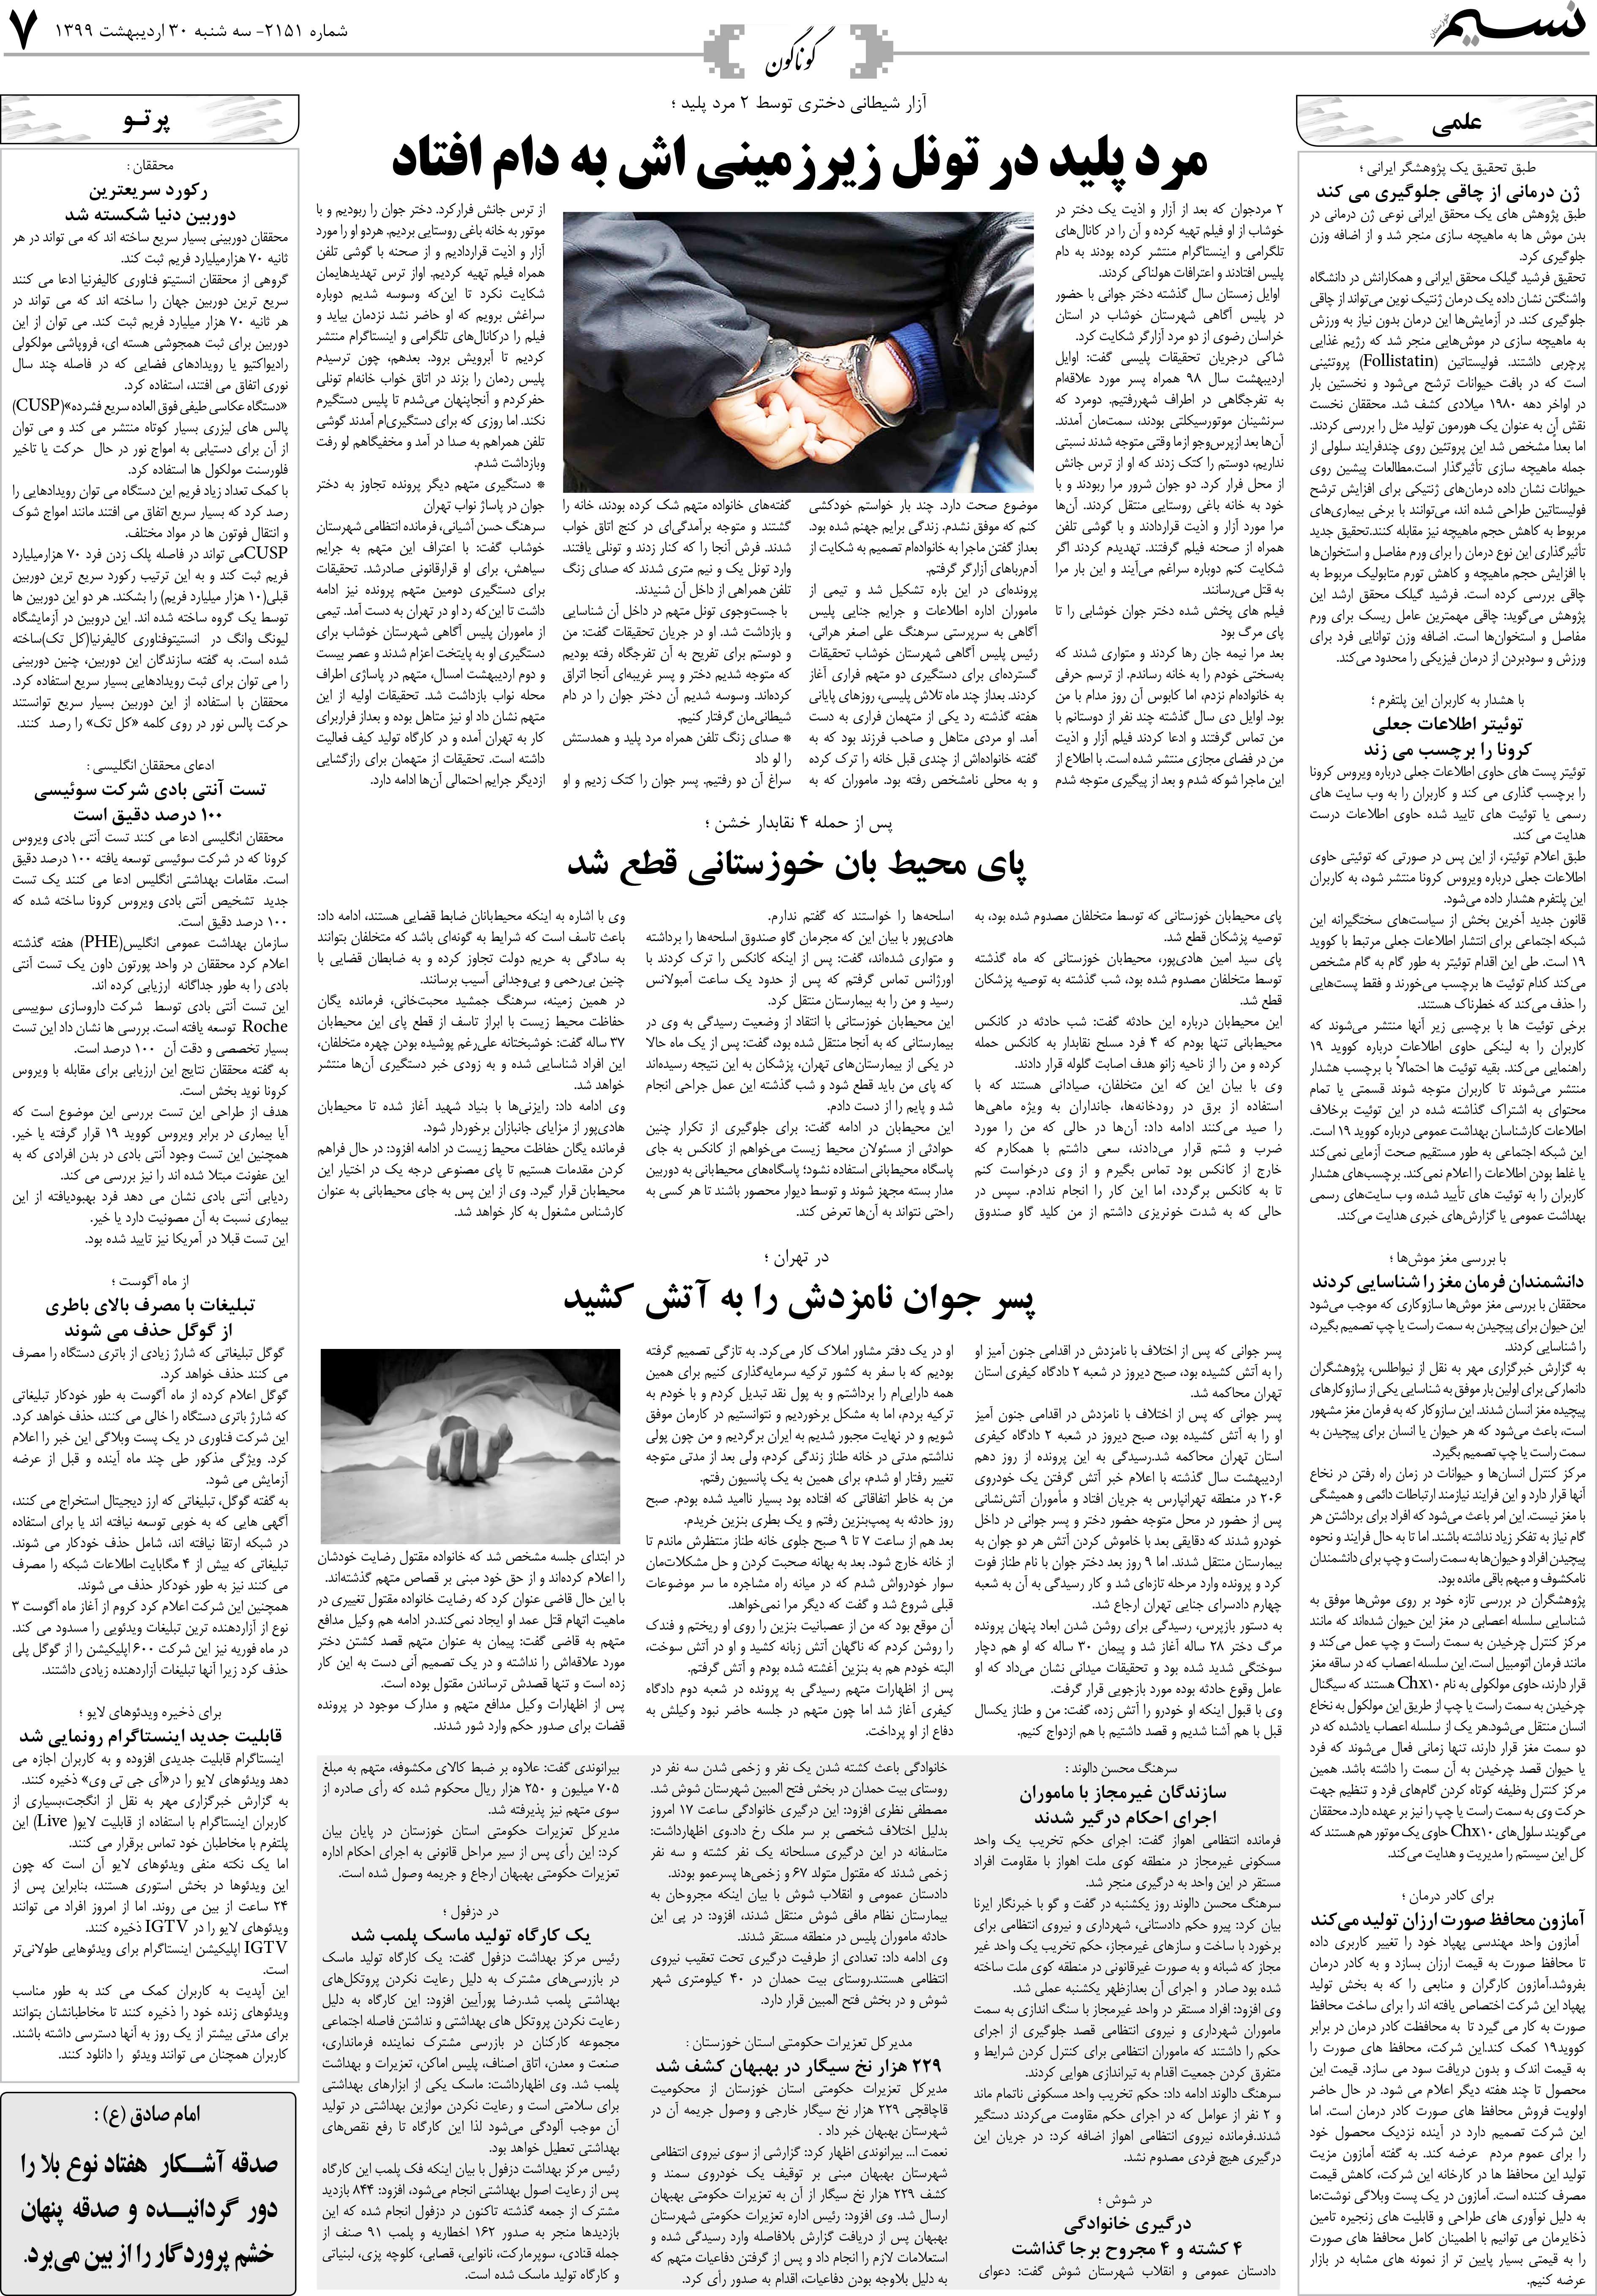 صفحه گوناگون روزنامه نسیم شماره 2151